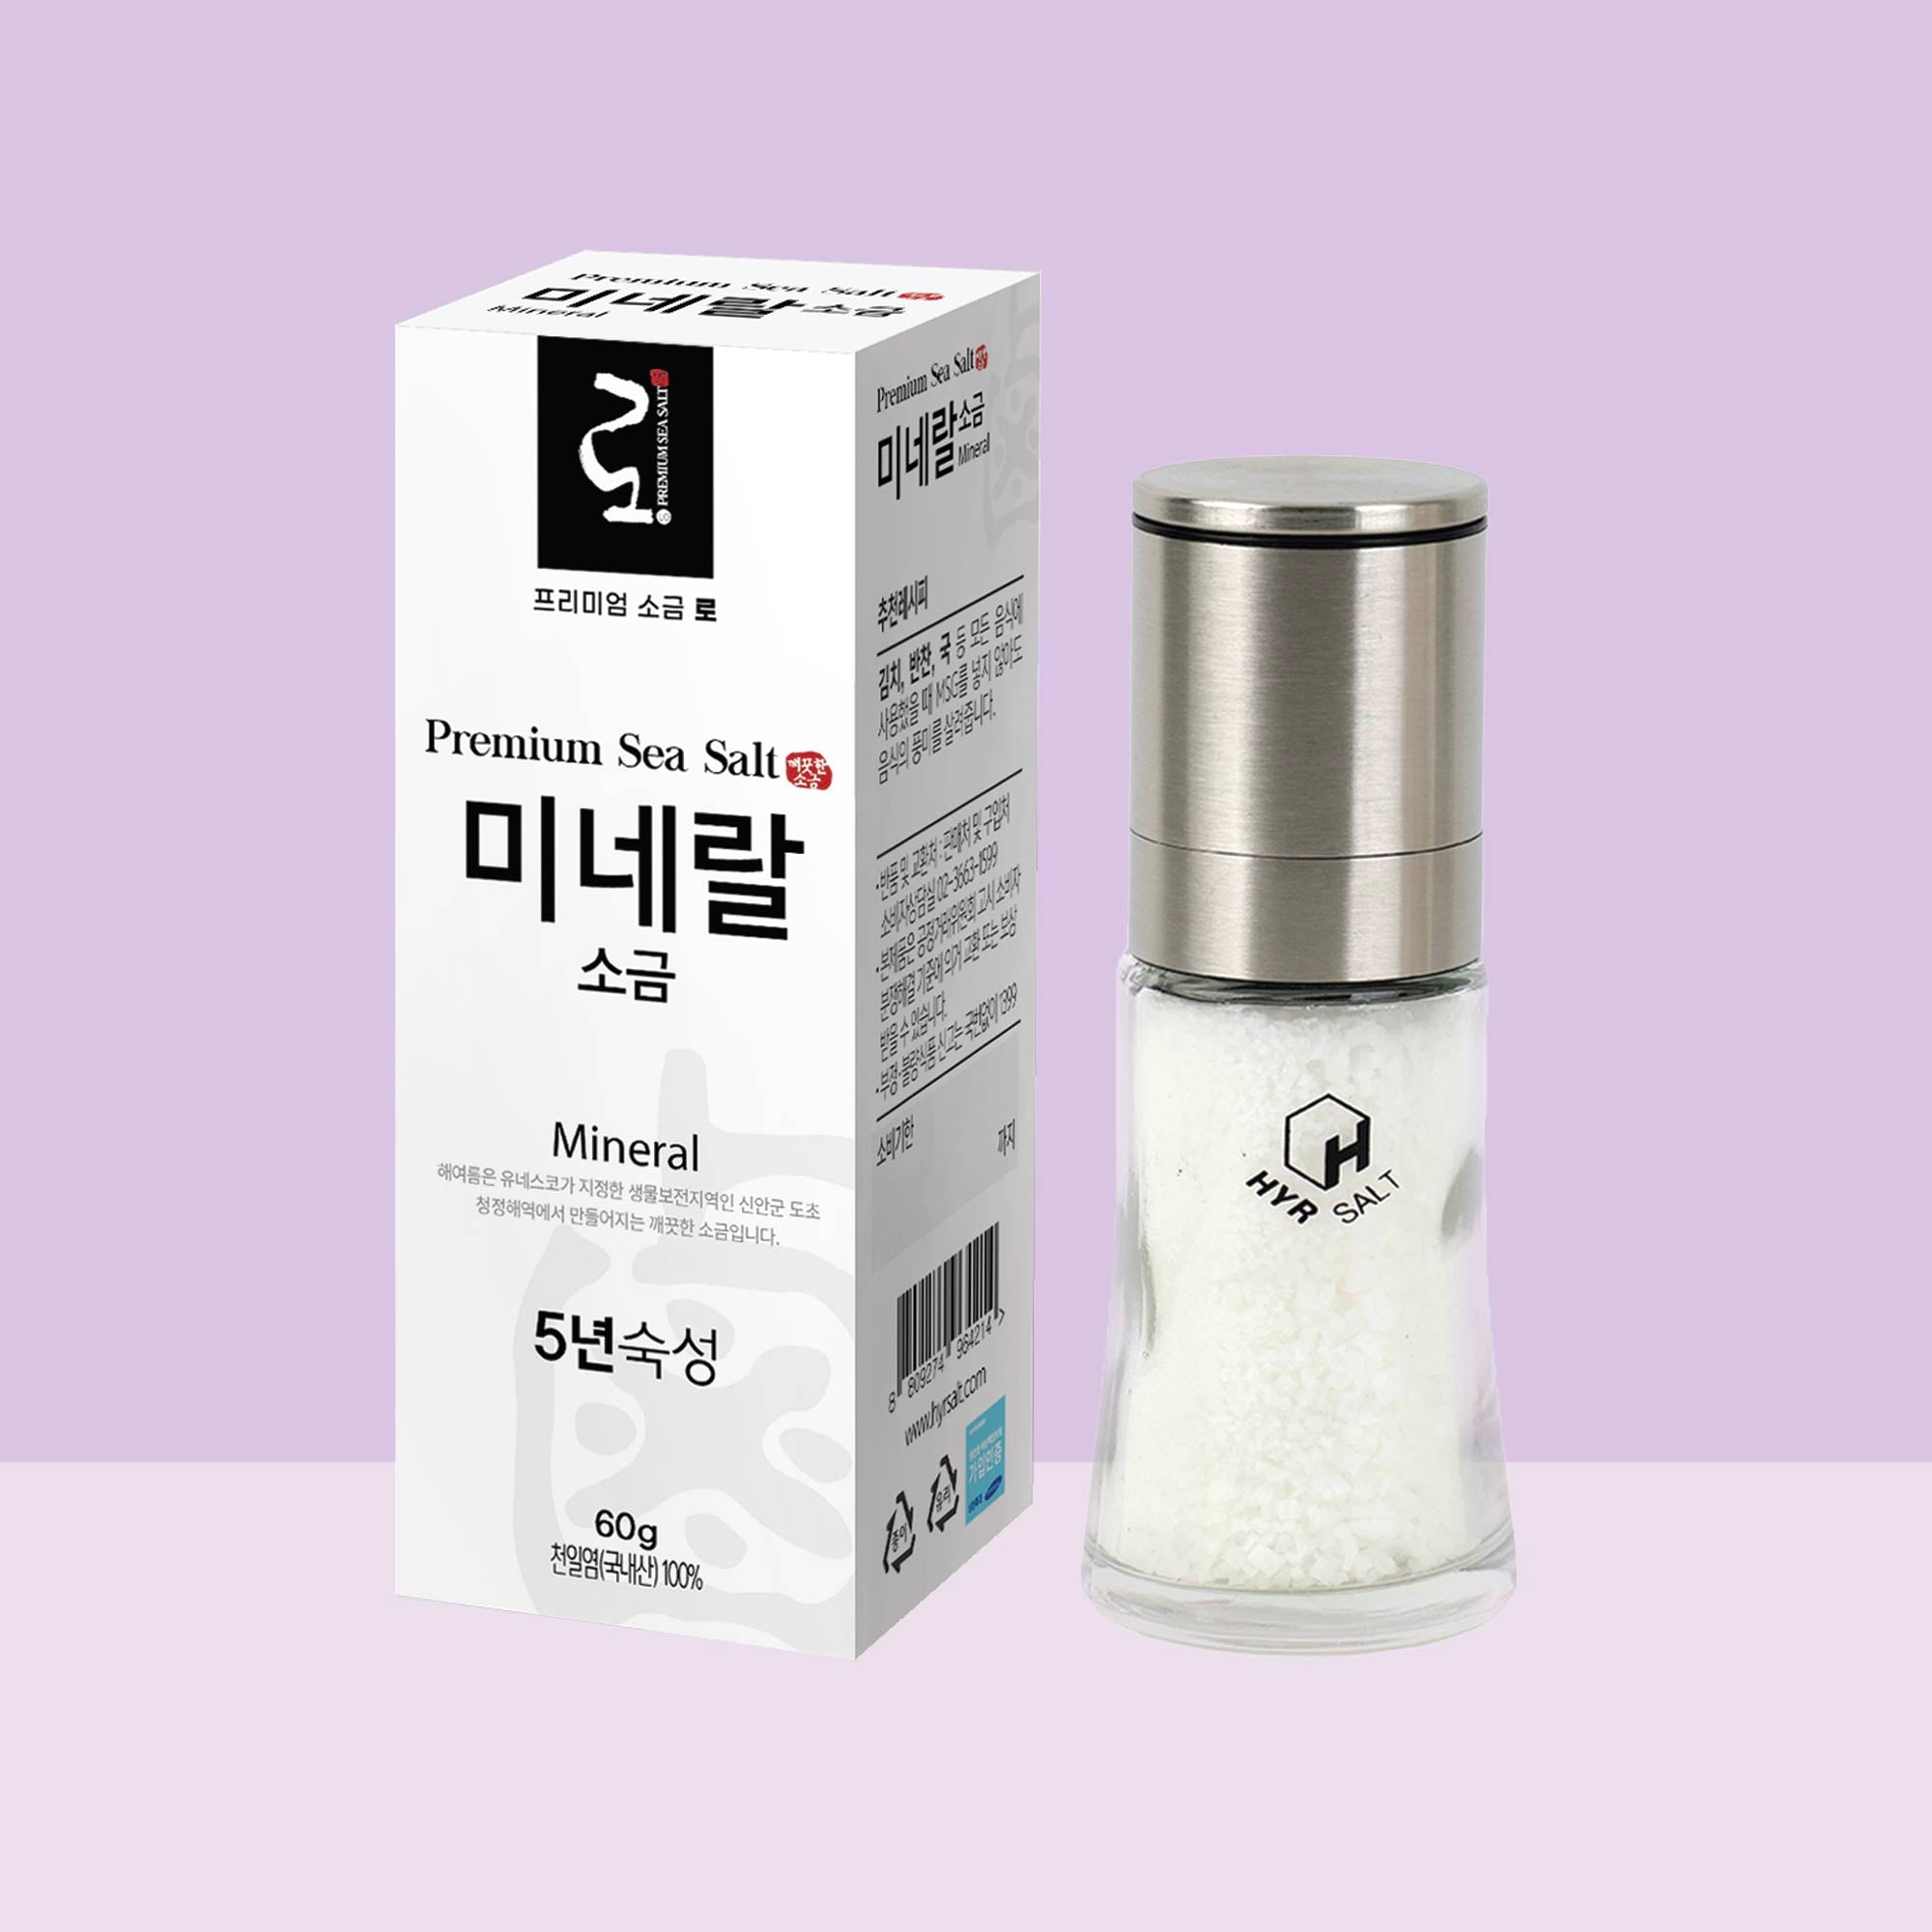 Premium Sea Salt 'Lo' 优质天日盐 ‘卤’